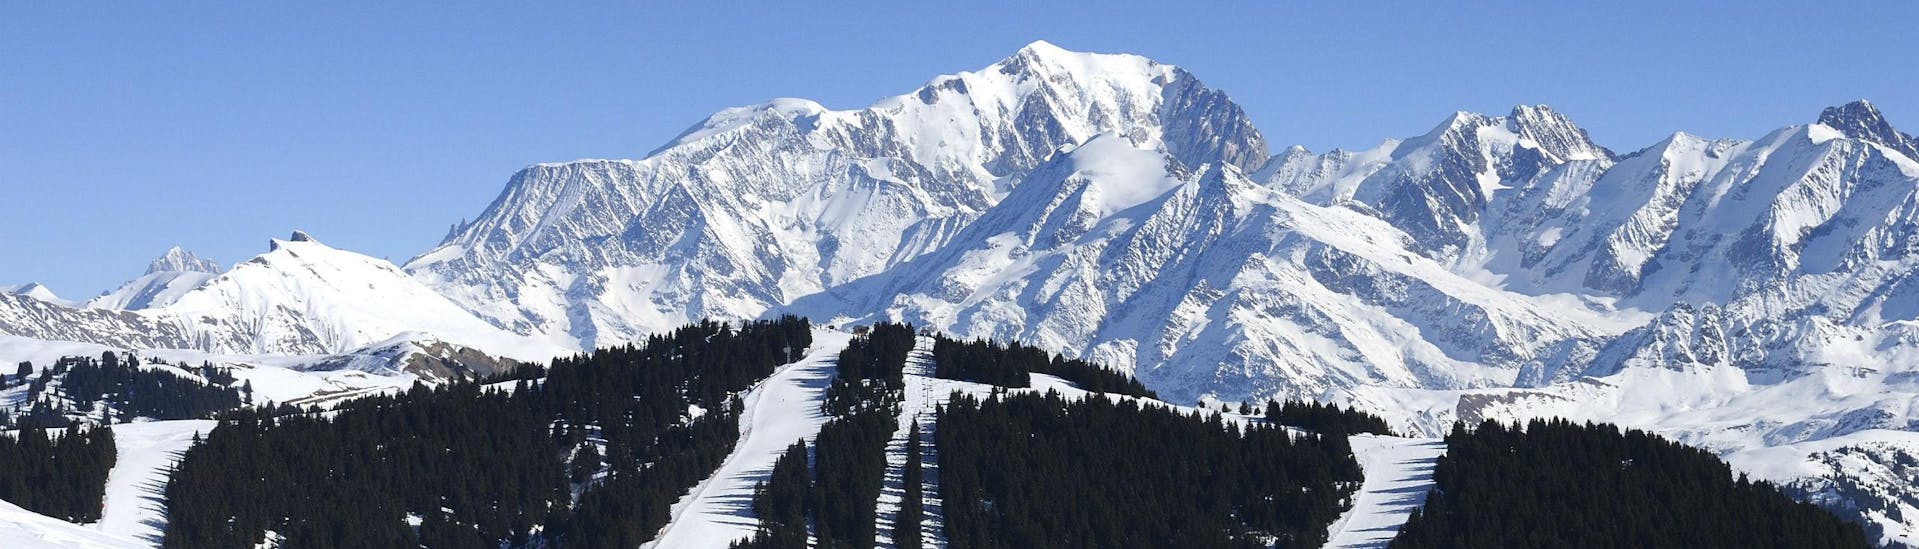 Une vue panoramique des pistes de ski des Saisies, une station de ski française nichée entre les majestueux sommets du département de la Savoie, où les écoles de ski locales offrent un large choix de cours de ski.